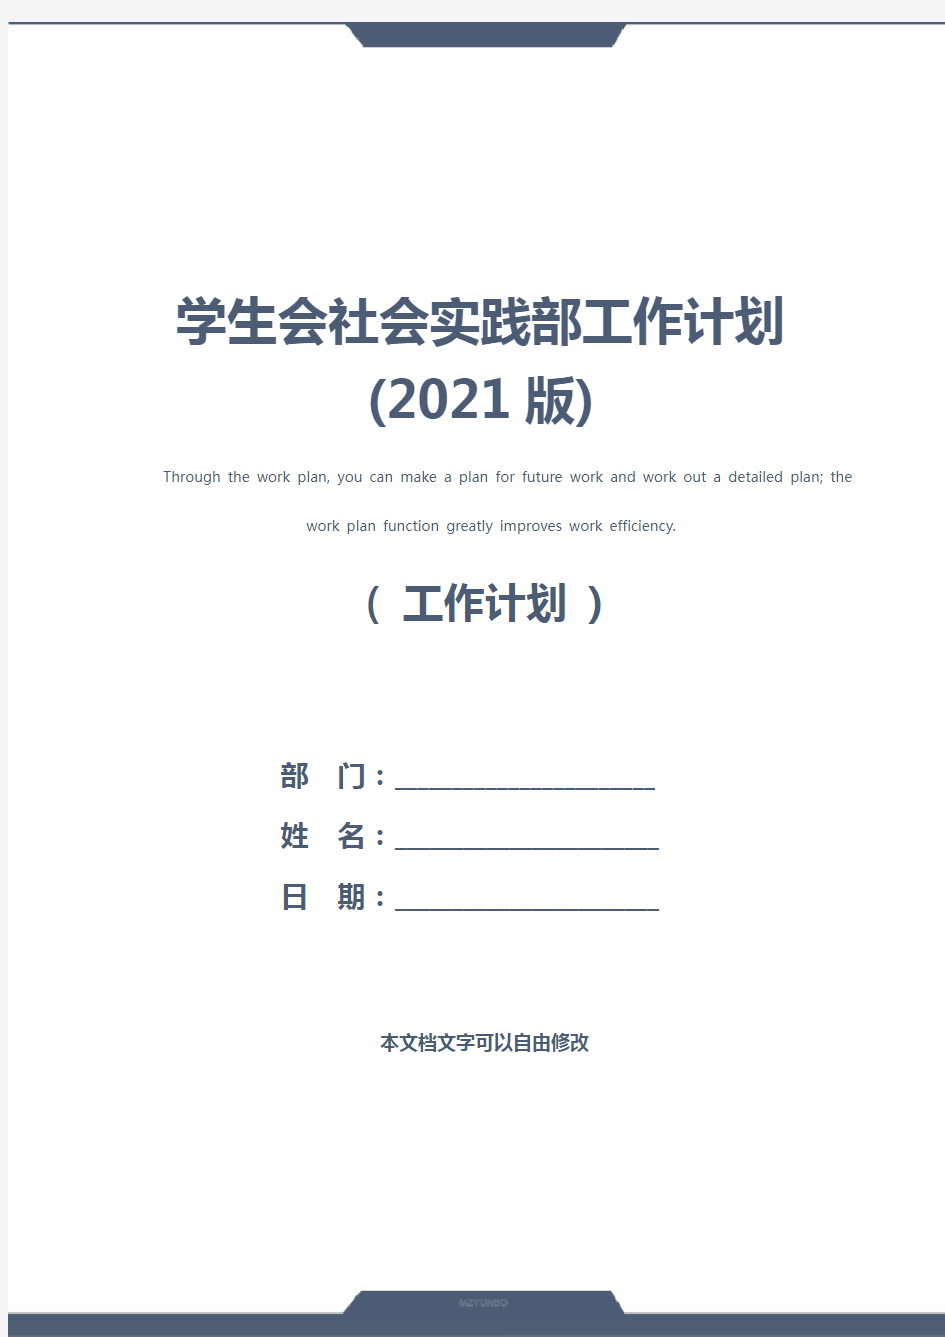 学生会社会实践部工作计划(2021版)